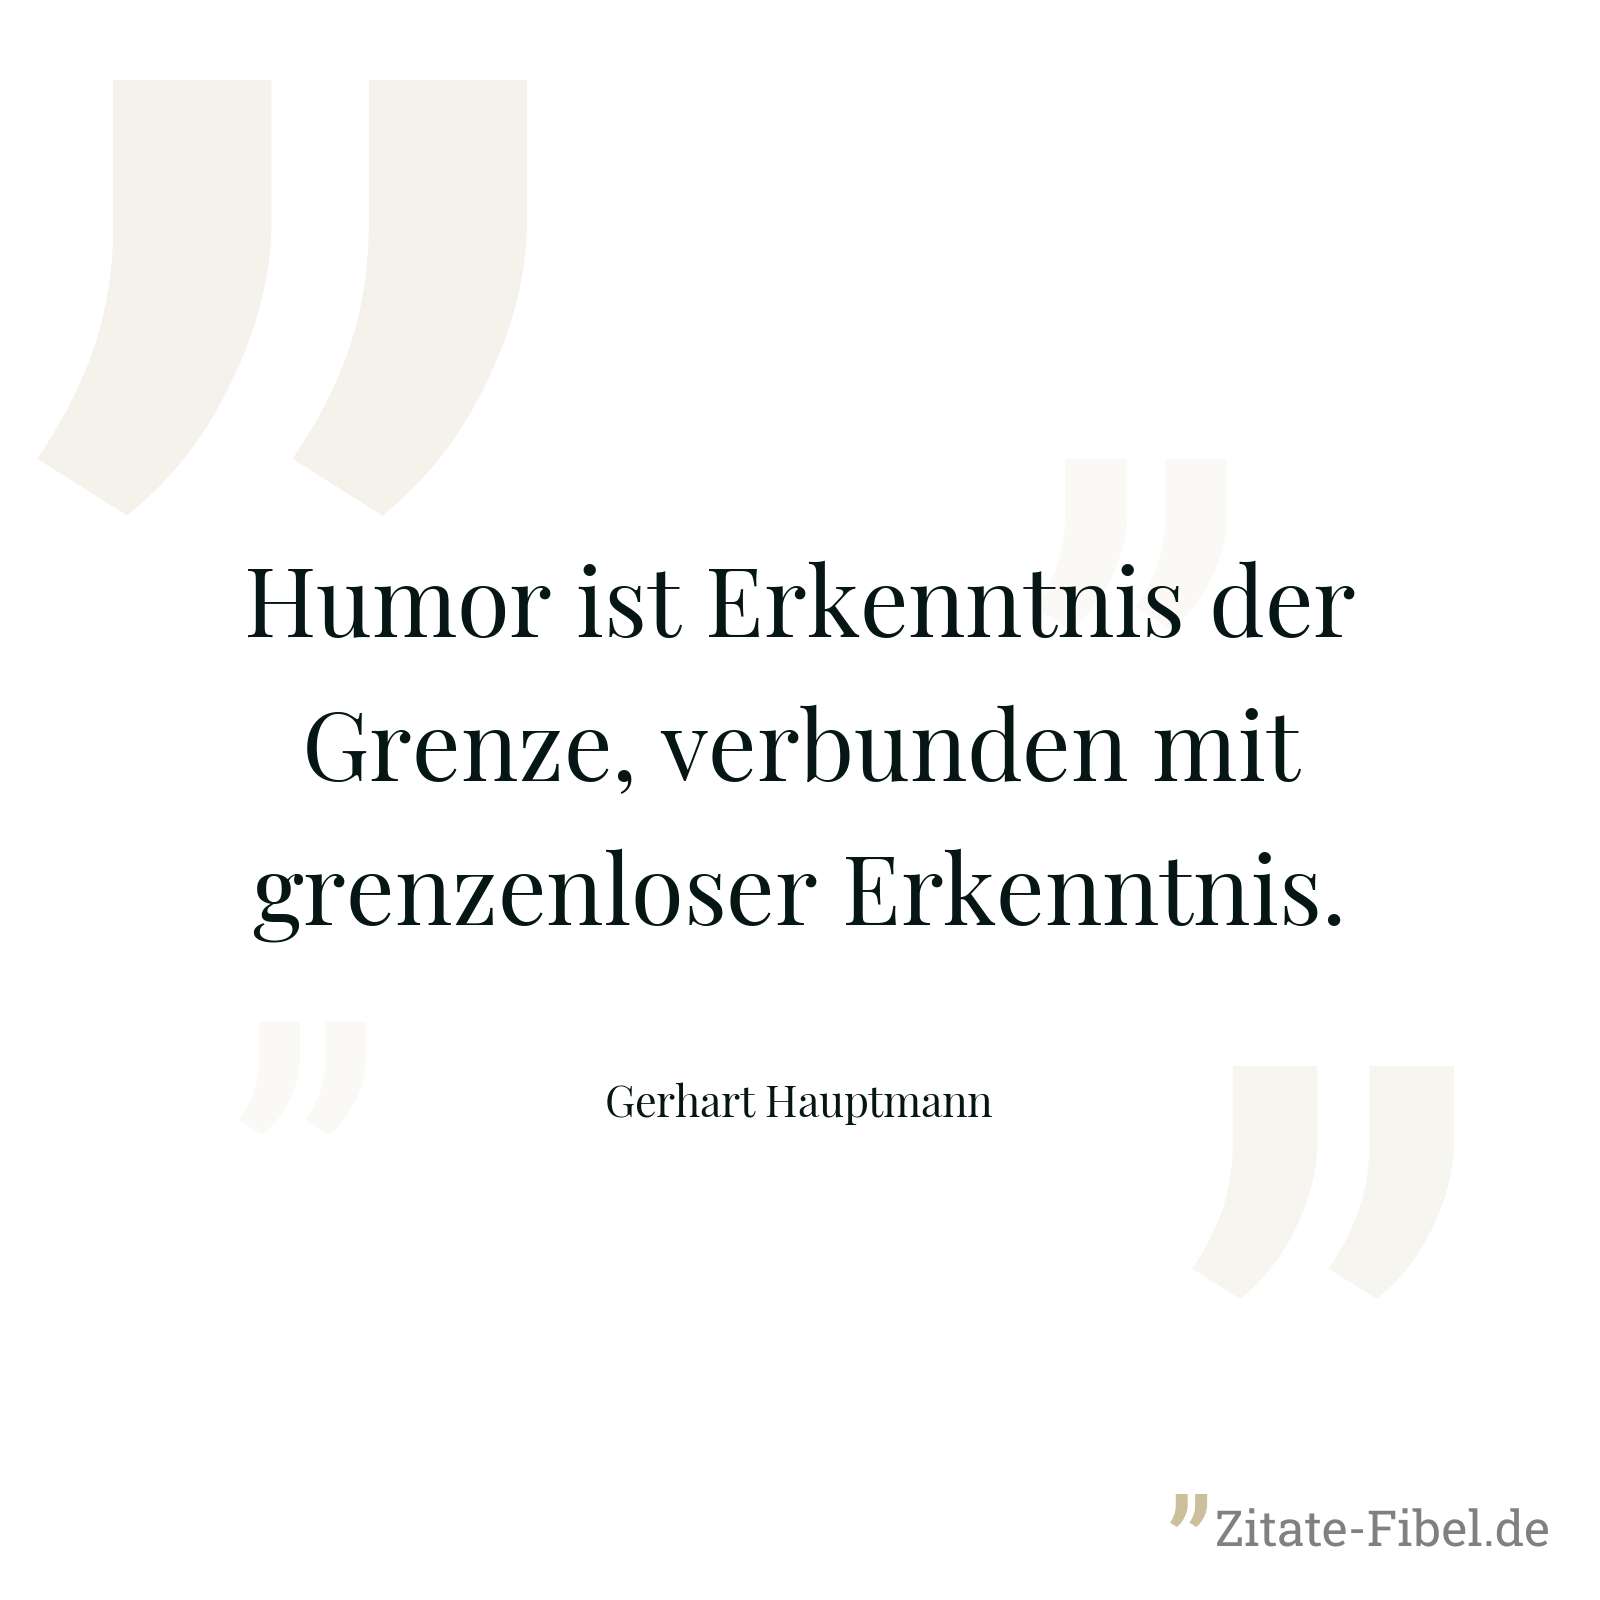 Humor ist Erkenntnis der Grenze, verbunden mit grenzenloser Erkenntnis. - Gerhart Hauptmann